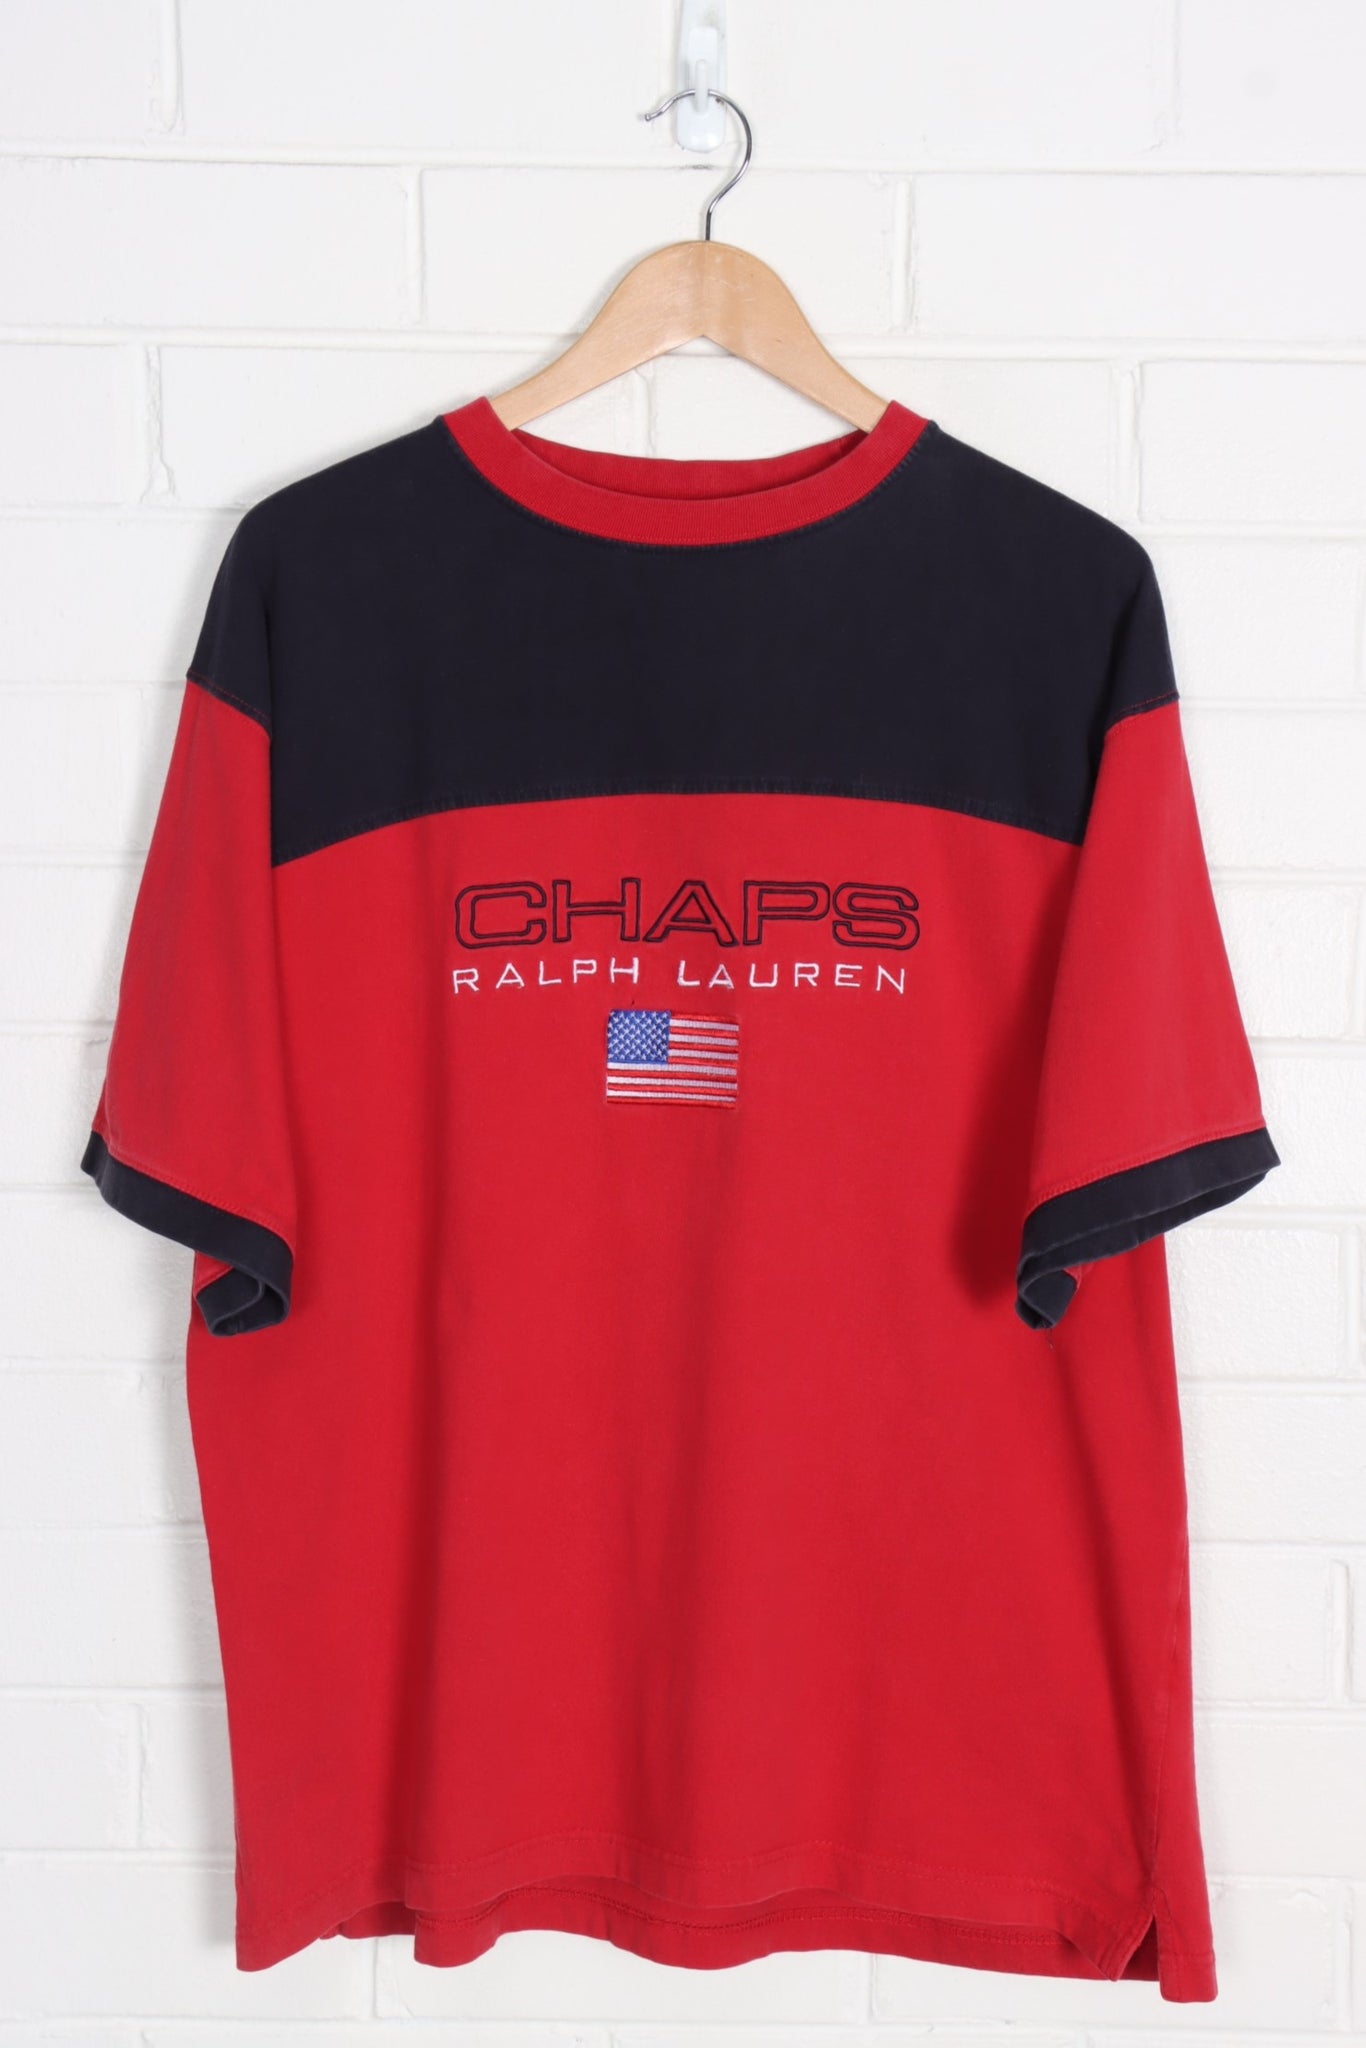 Chaps Ralph Lauren T-Shirt